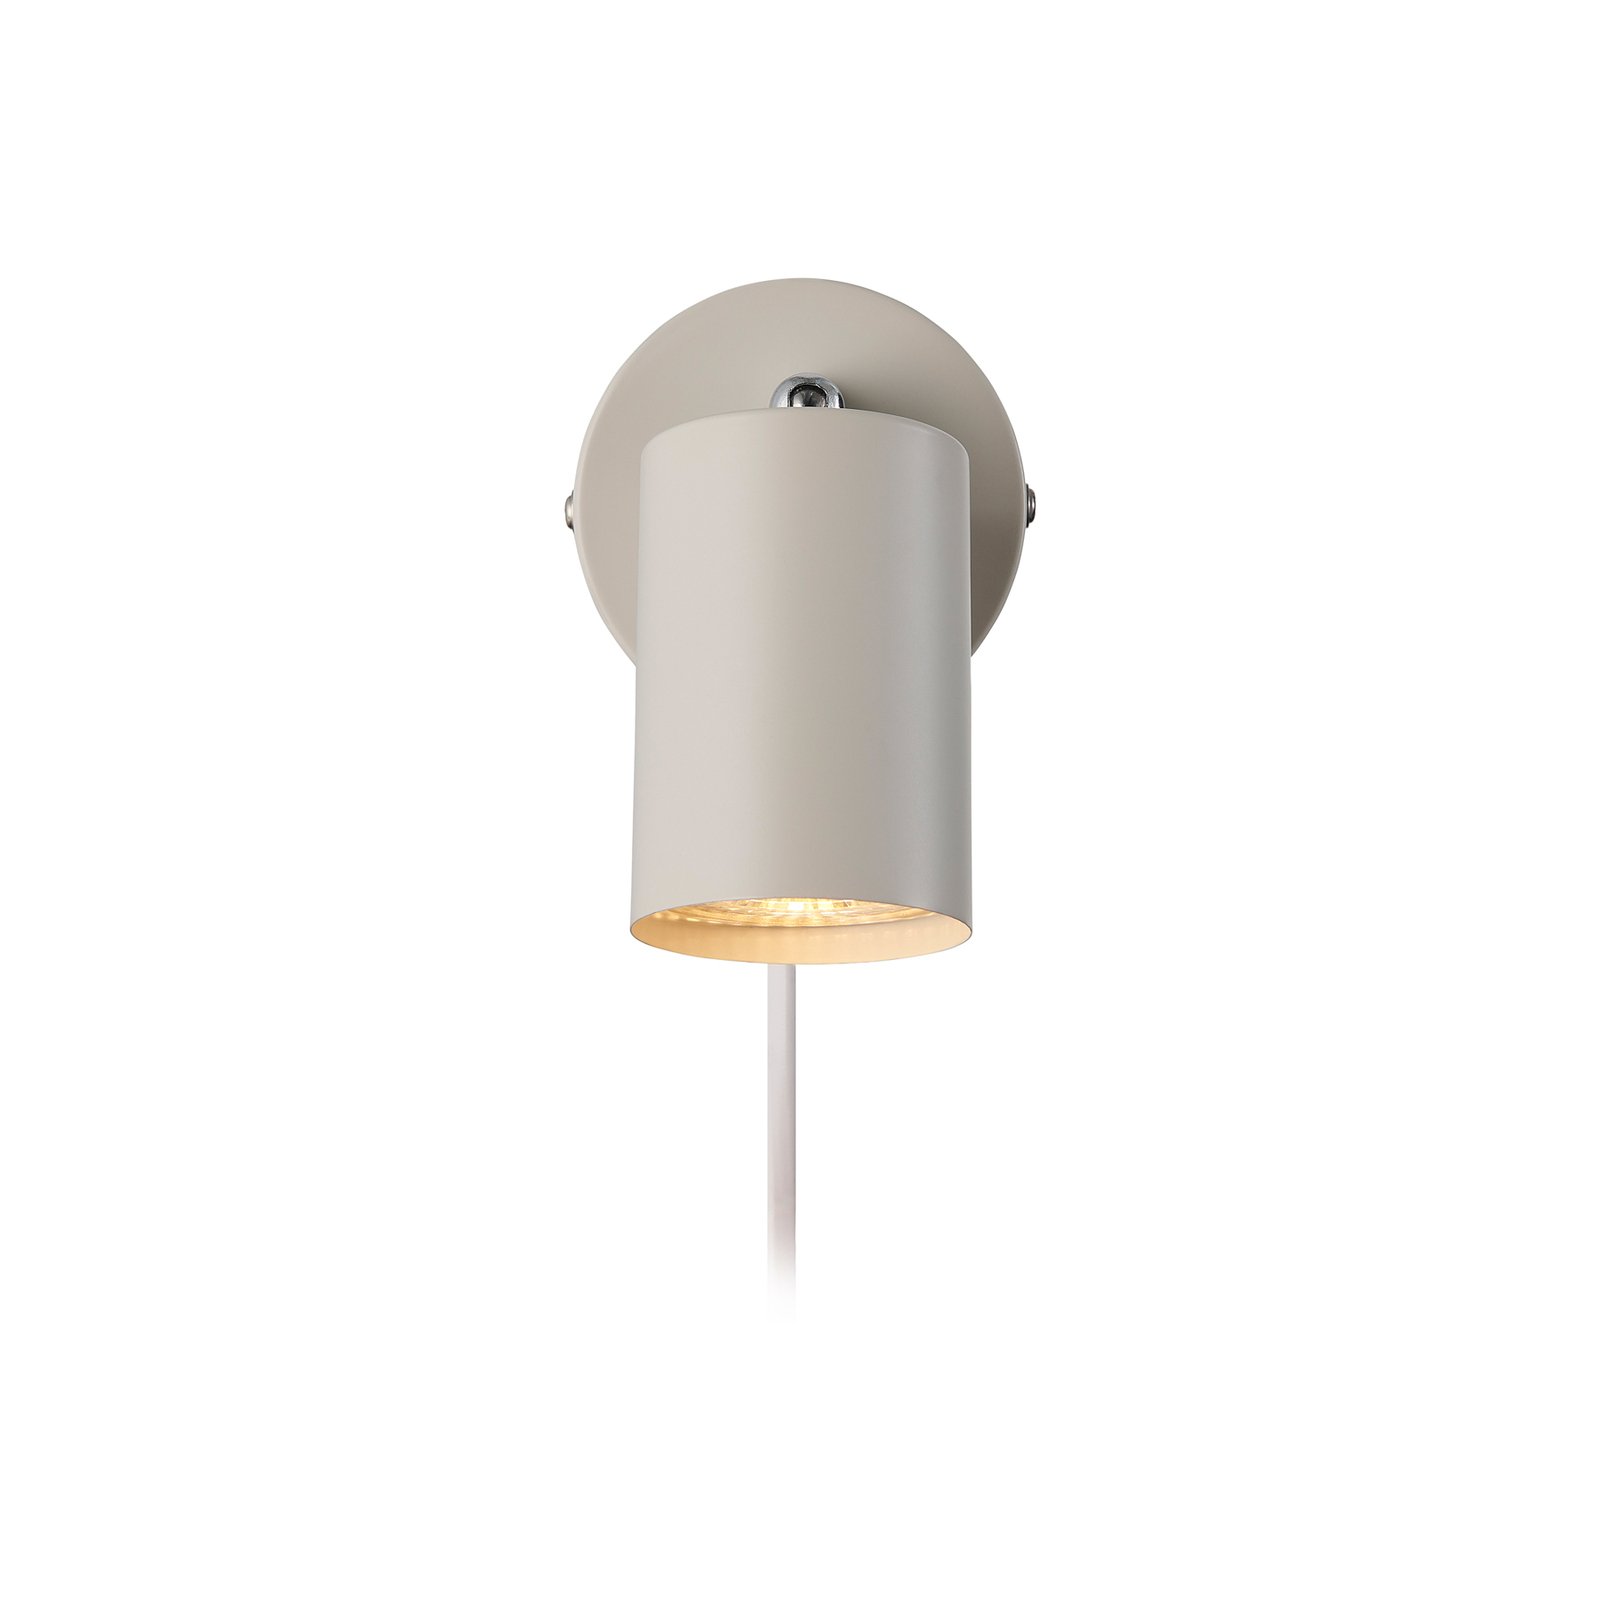 Explore väggspotlight med kabel och stickpropp, GU10, beige